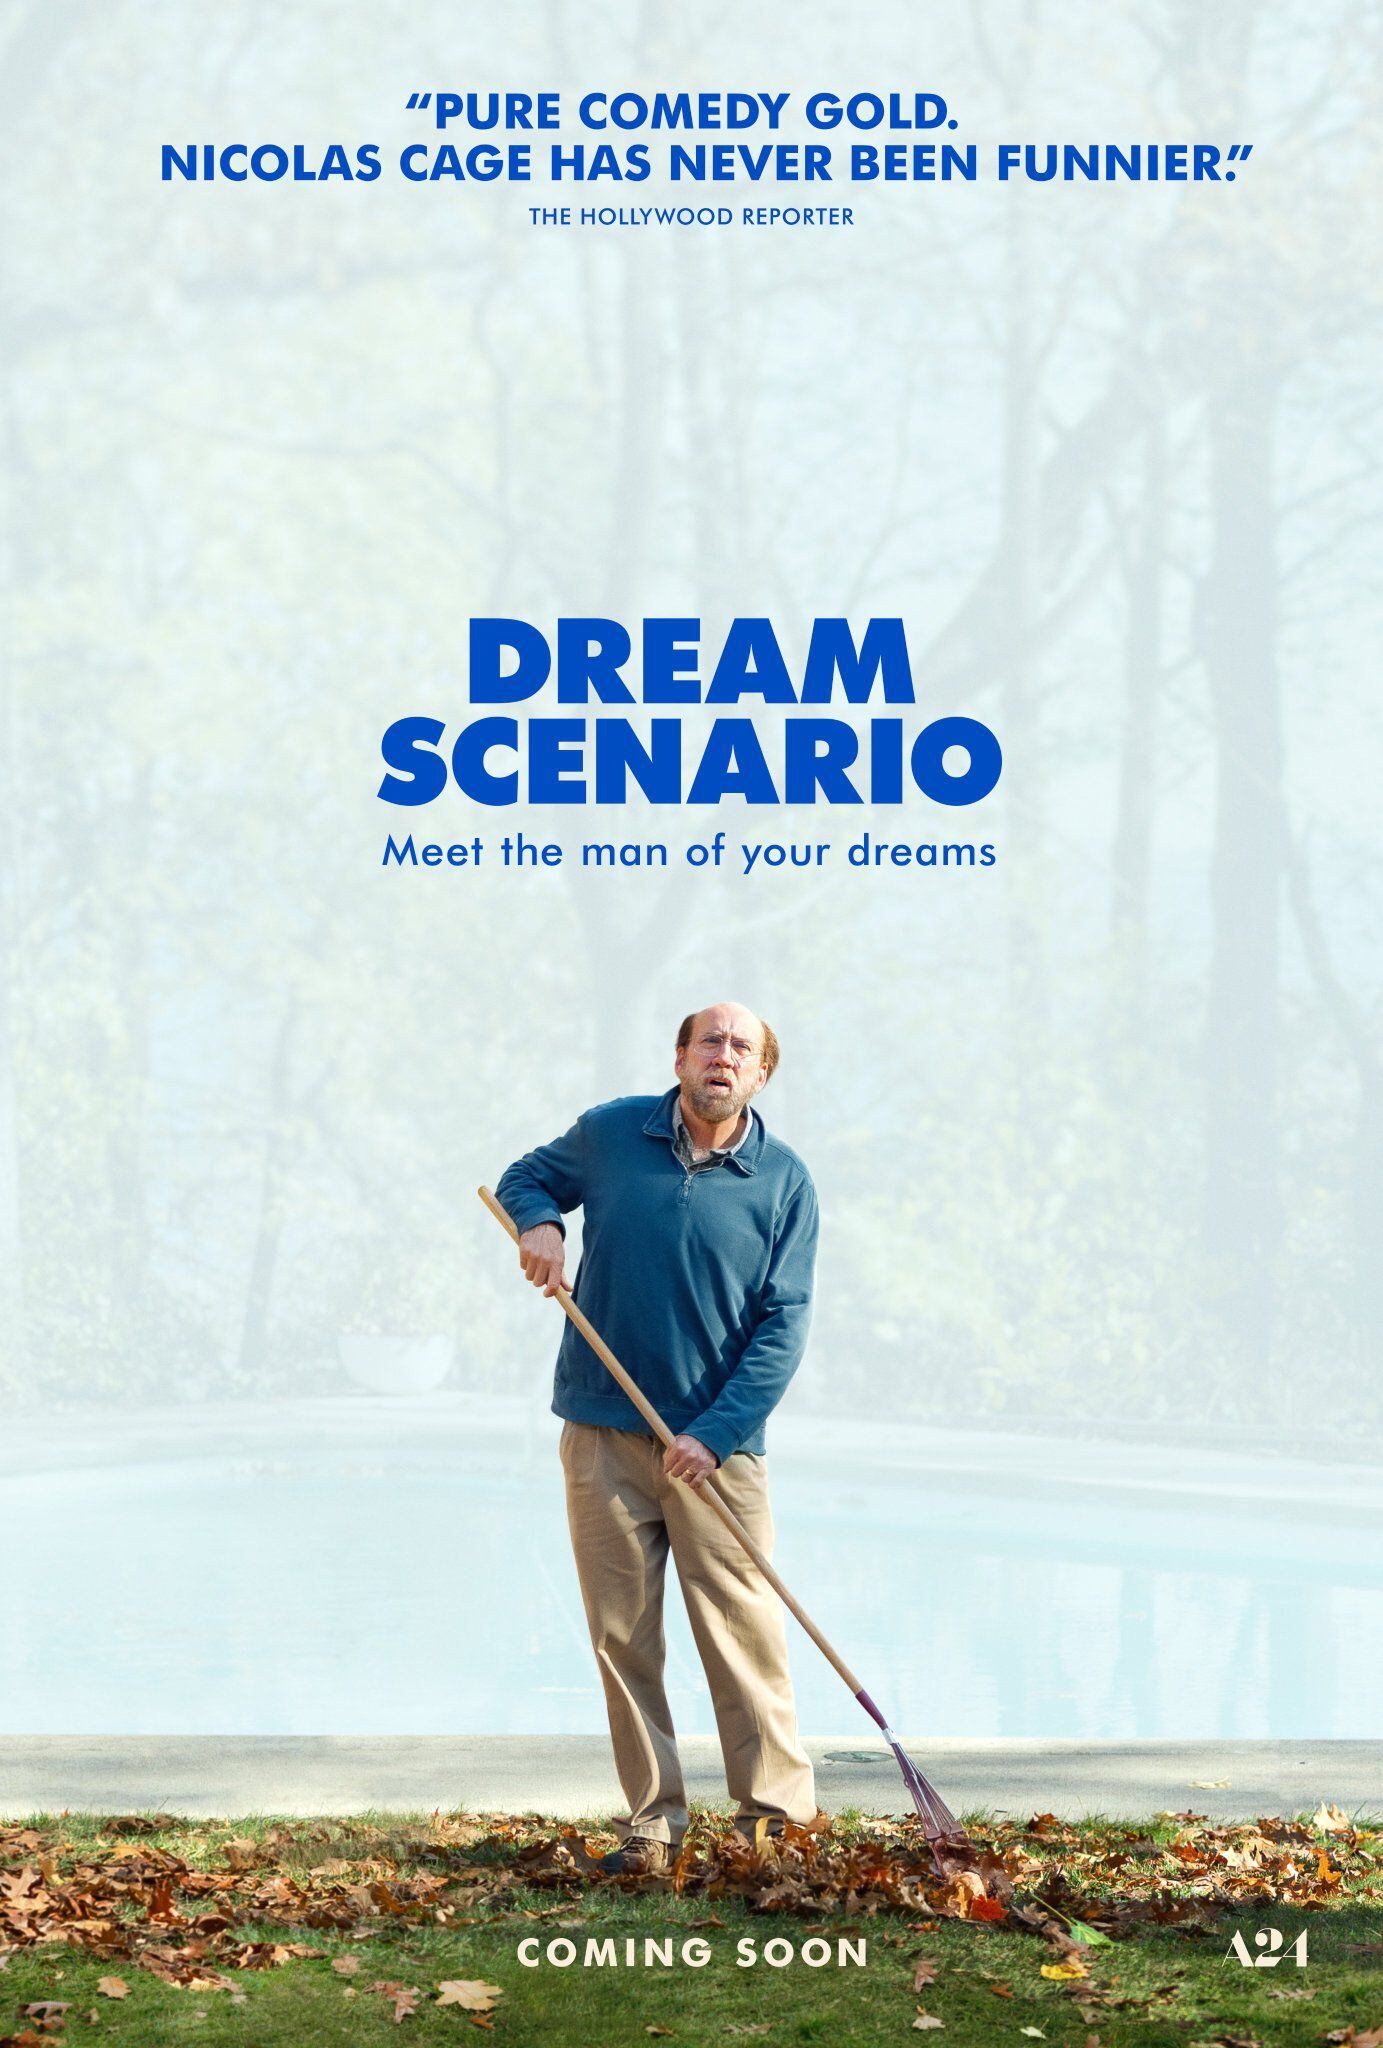 Póster oficial de "Dream Scenario", película presentada por primera vez en el Festival de Toronto. (A24)